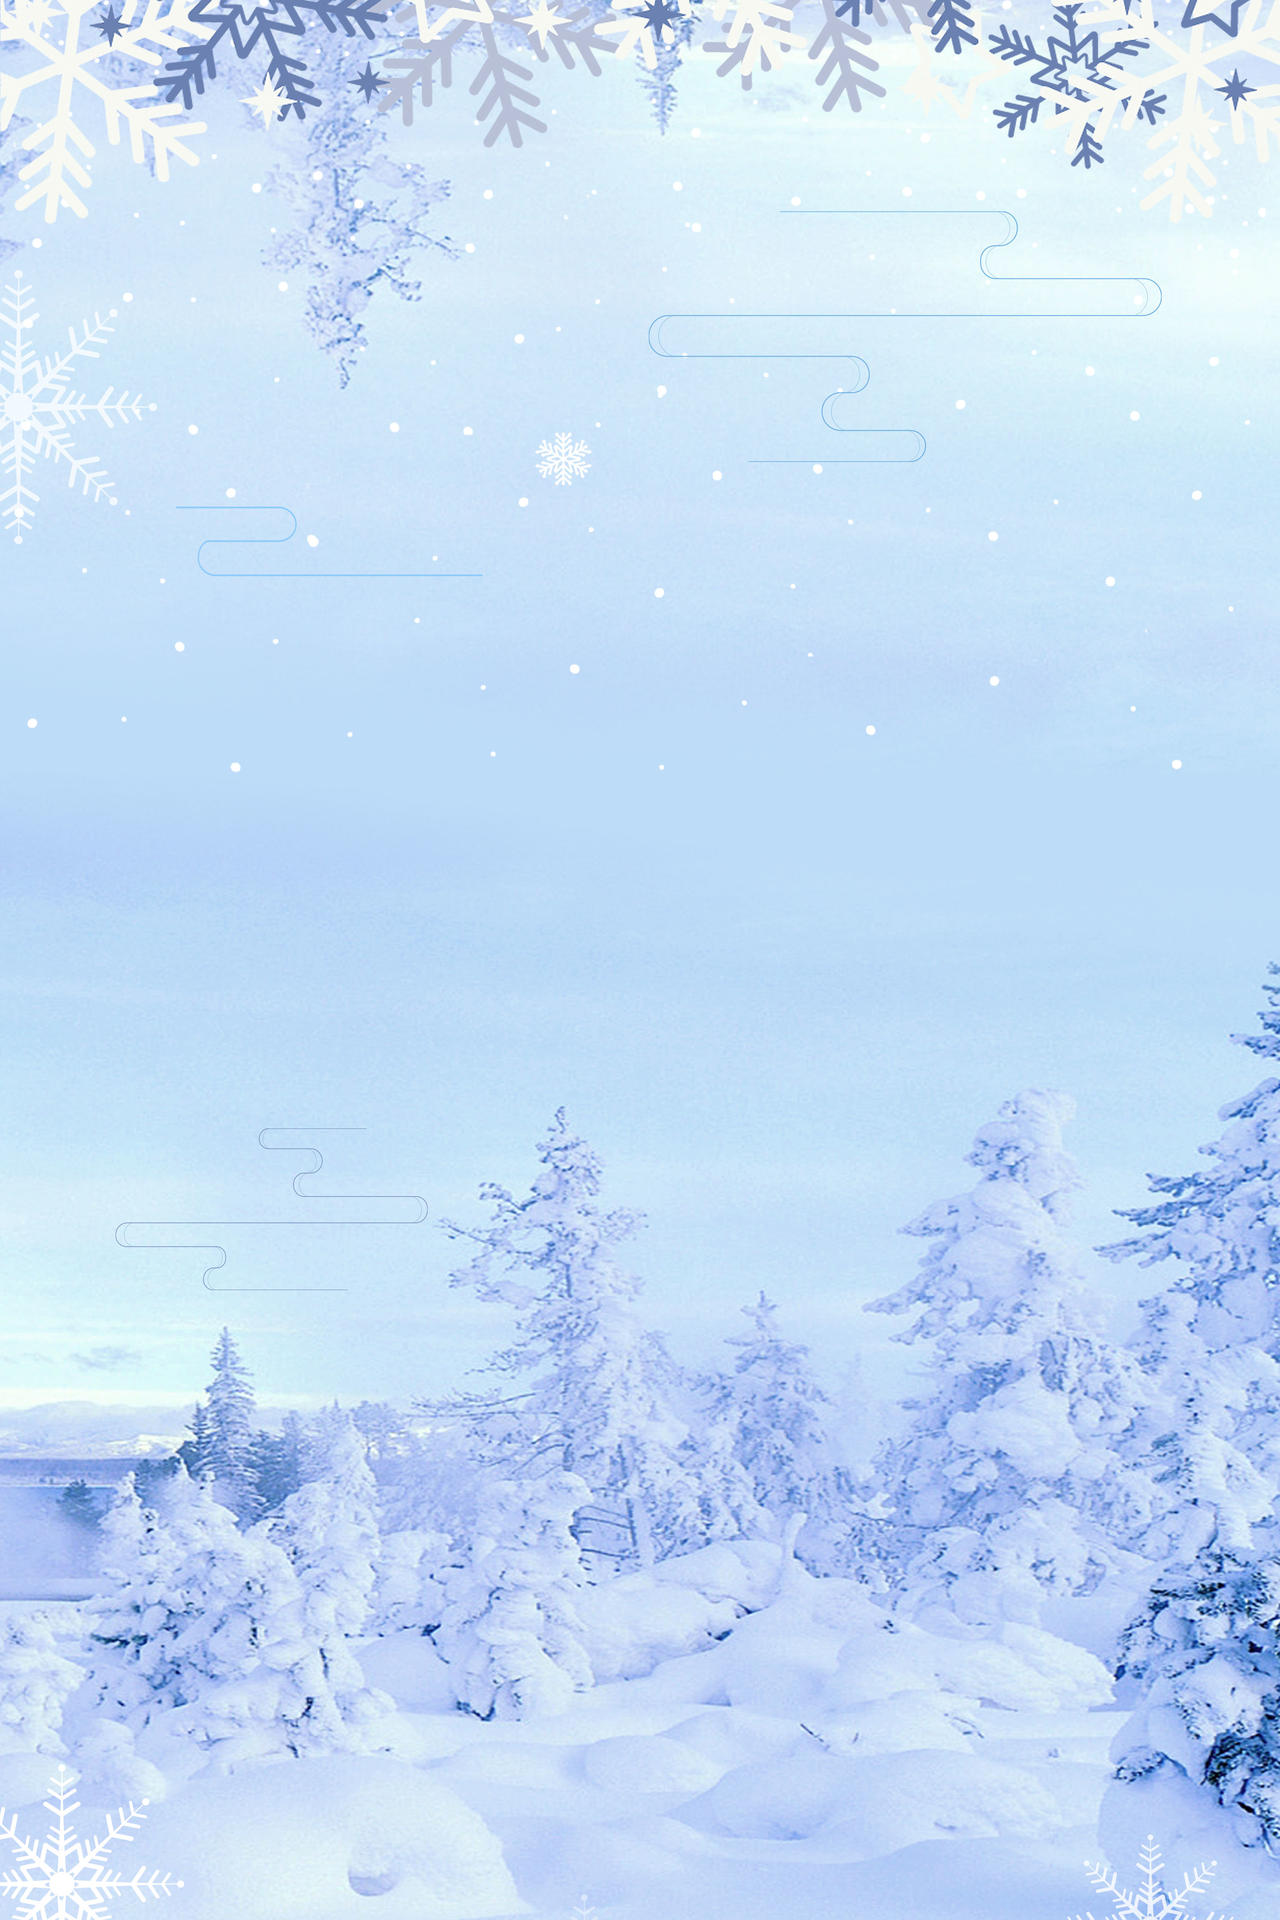 简约清新淡蓝色天空雪松雪景冬天大雪小雪背景素材